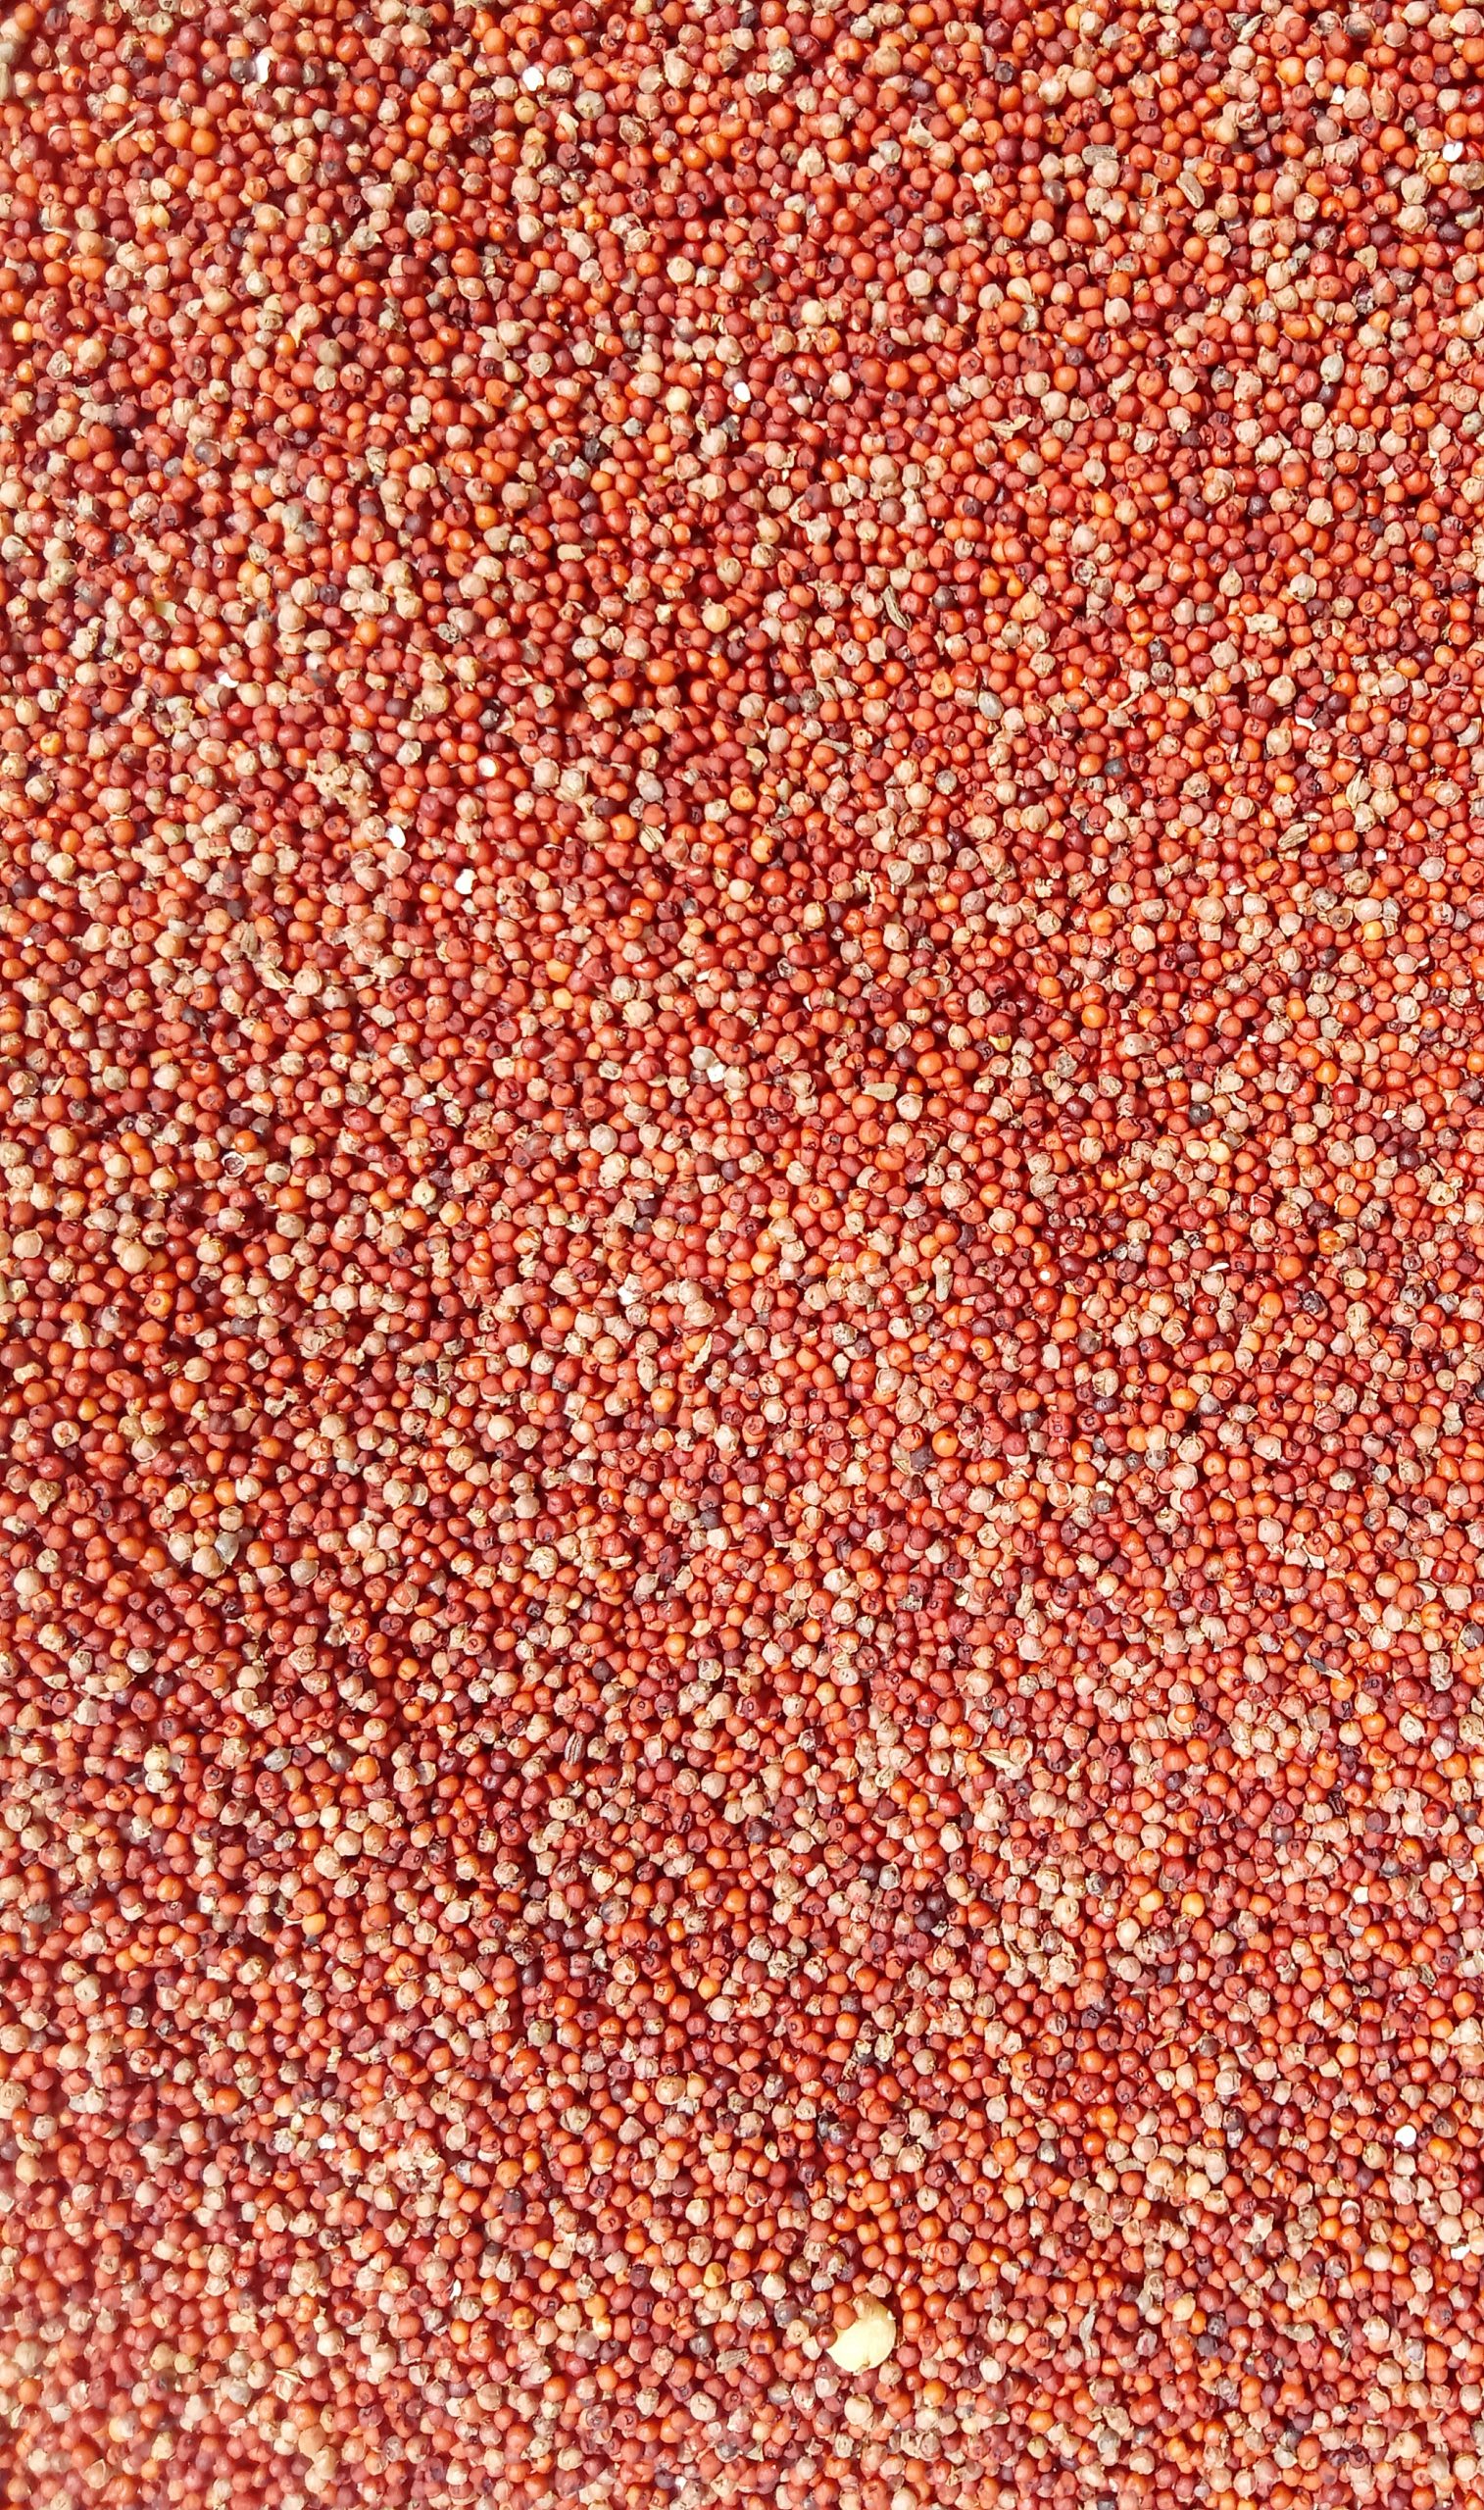 Finger millet grains